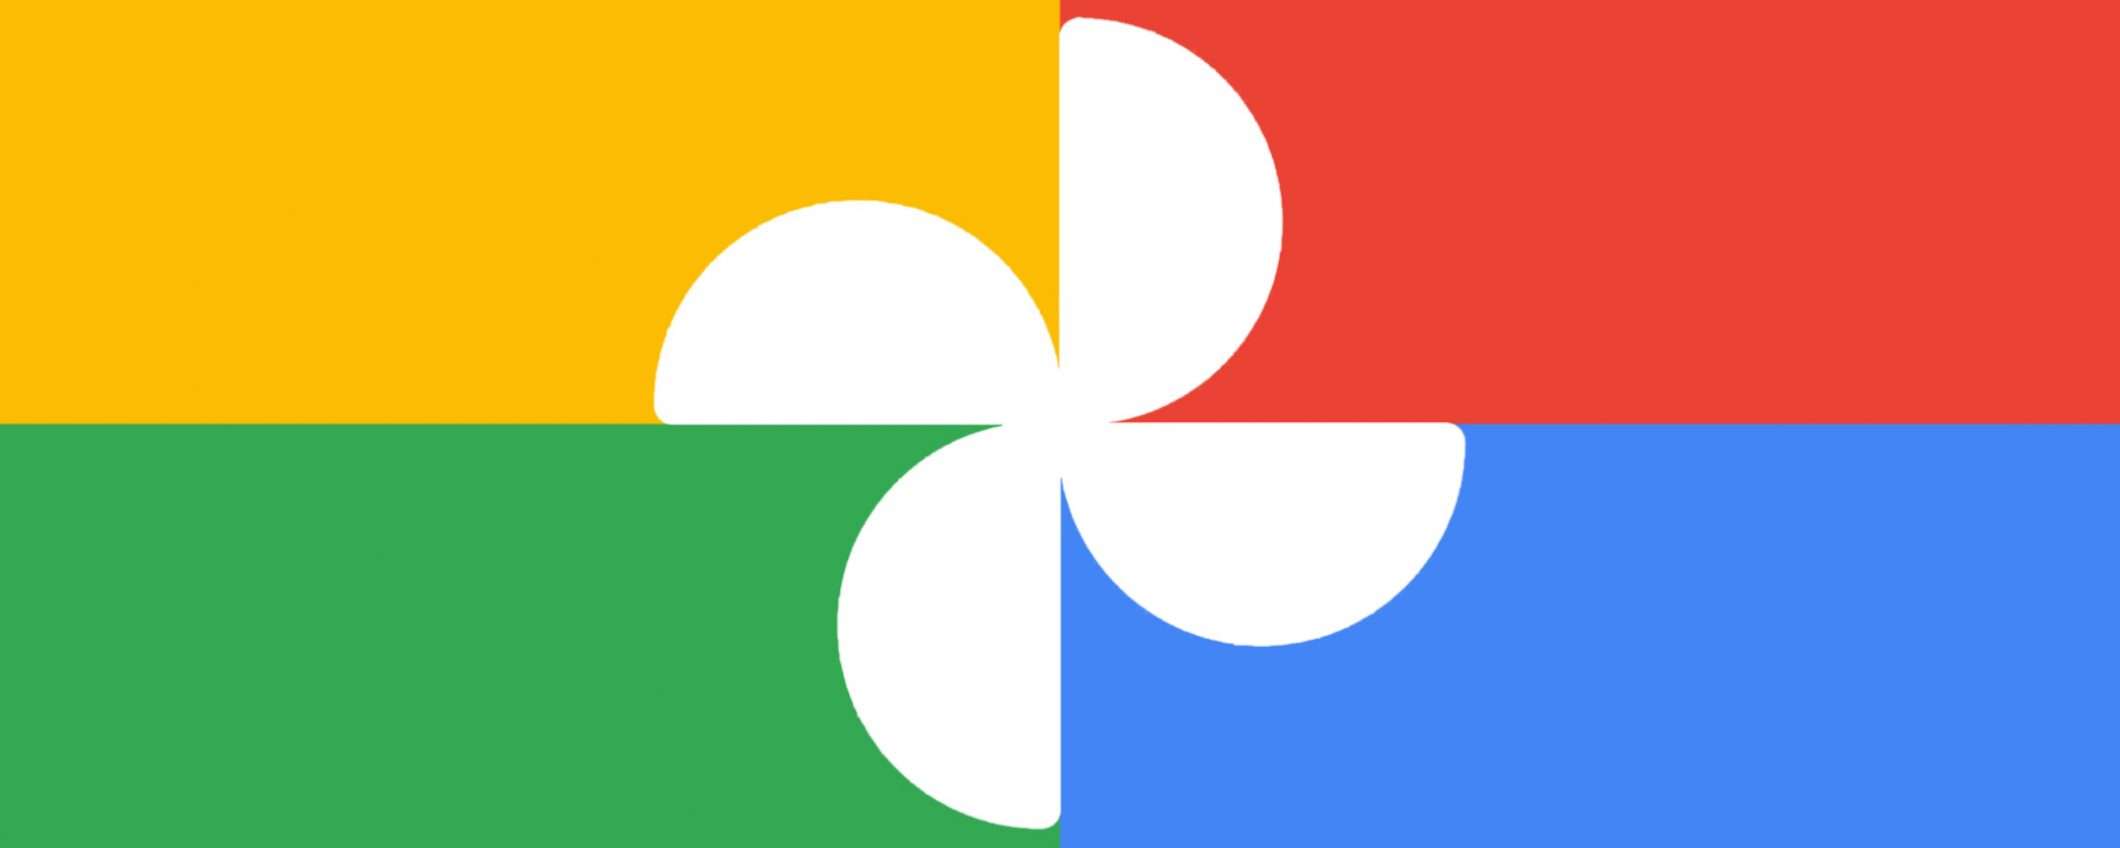 Google Foto: un tool per liberare spazio